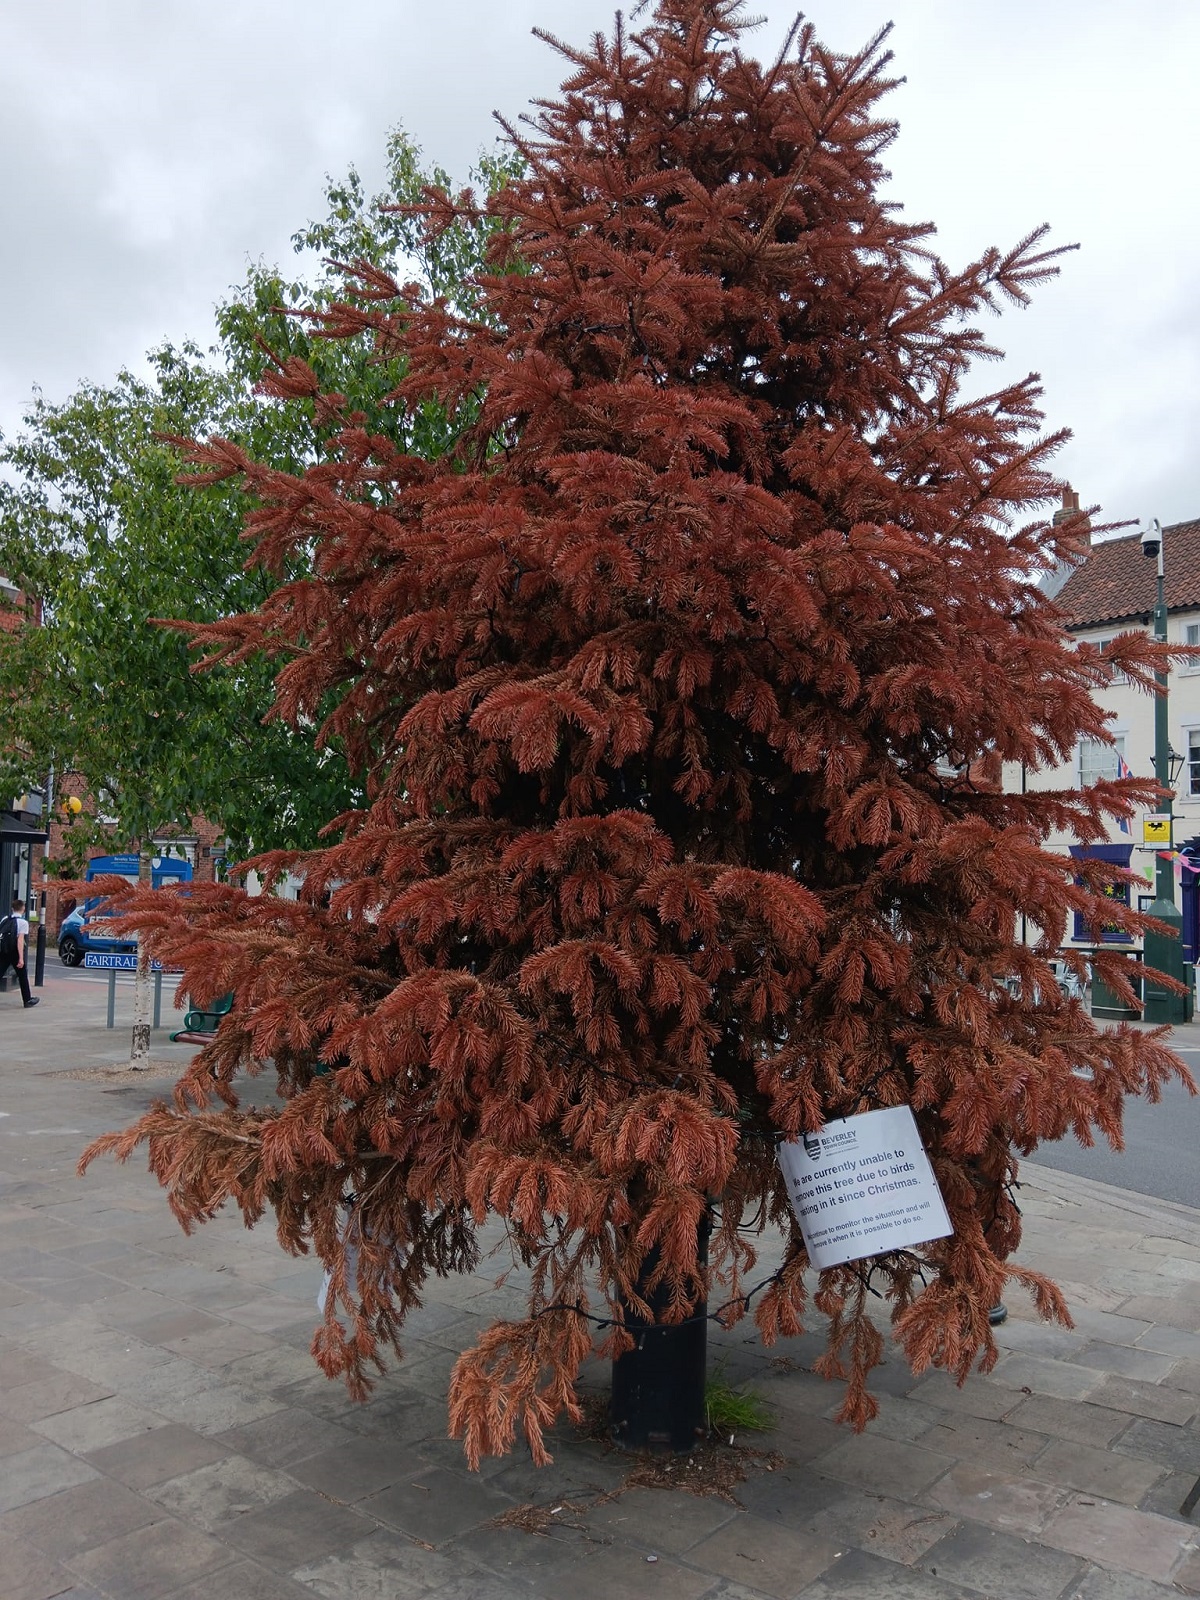 Natal em junho? Uma cidade do Reino Unido precisou manter a árvore natalina devido a um pombo 